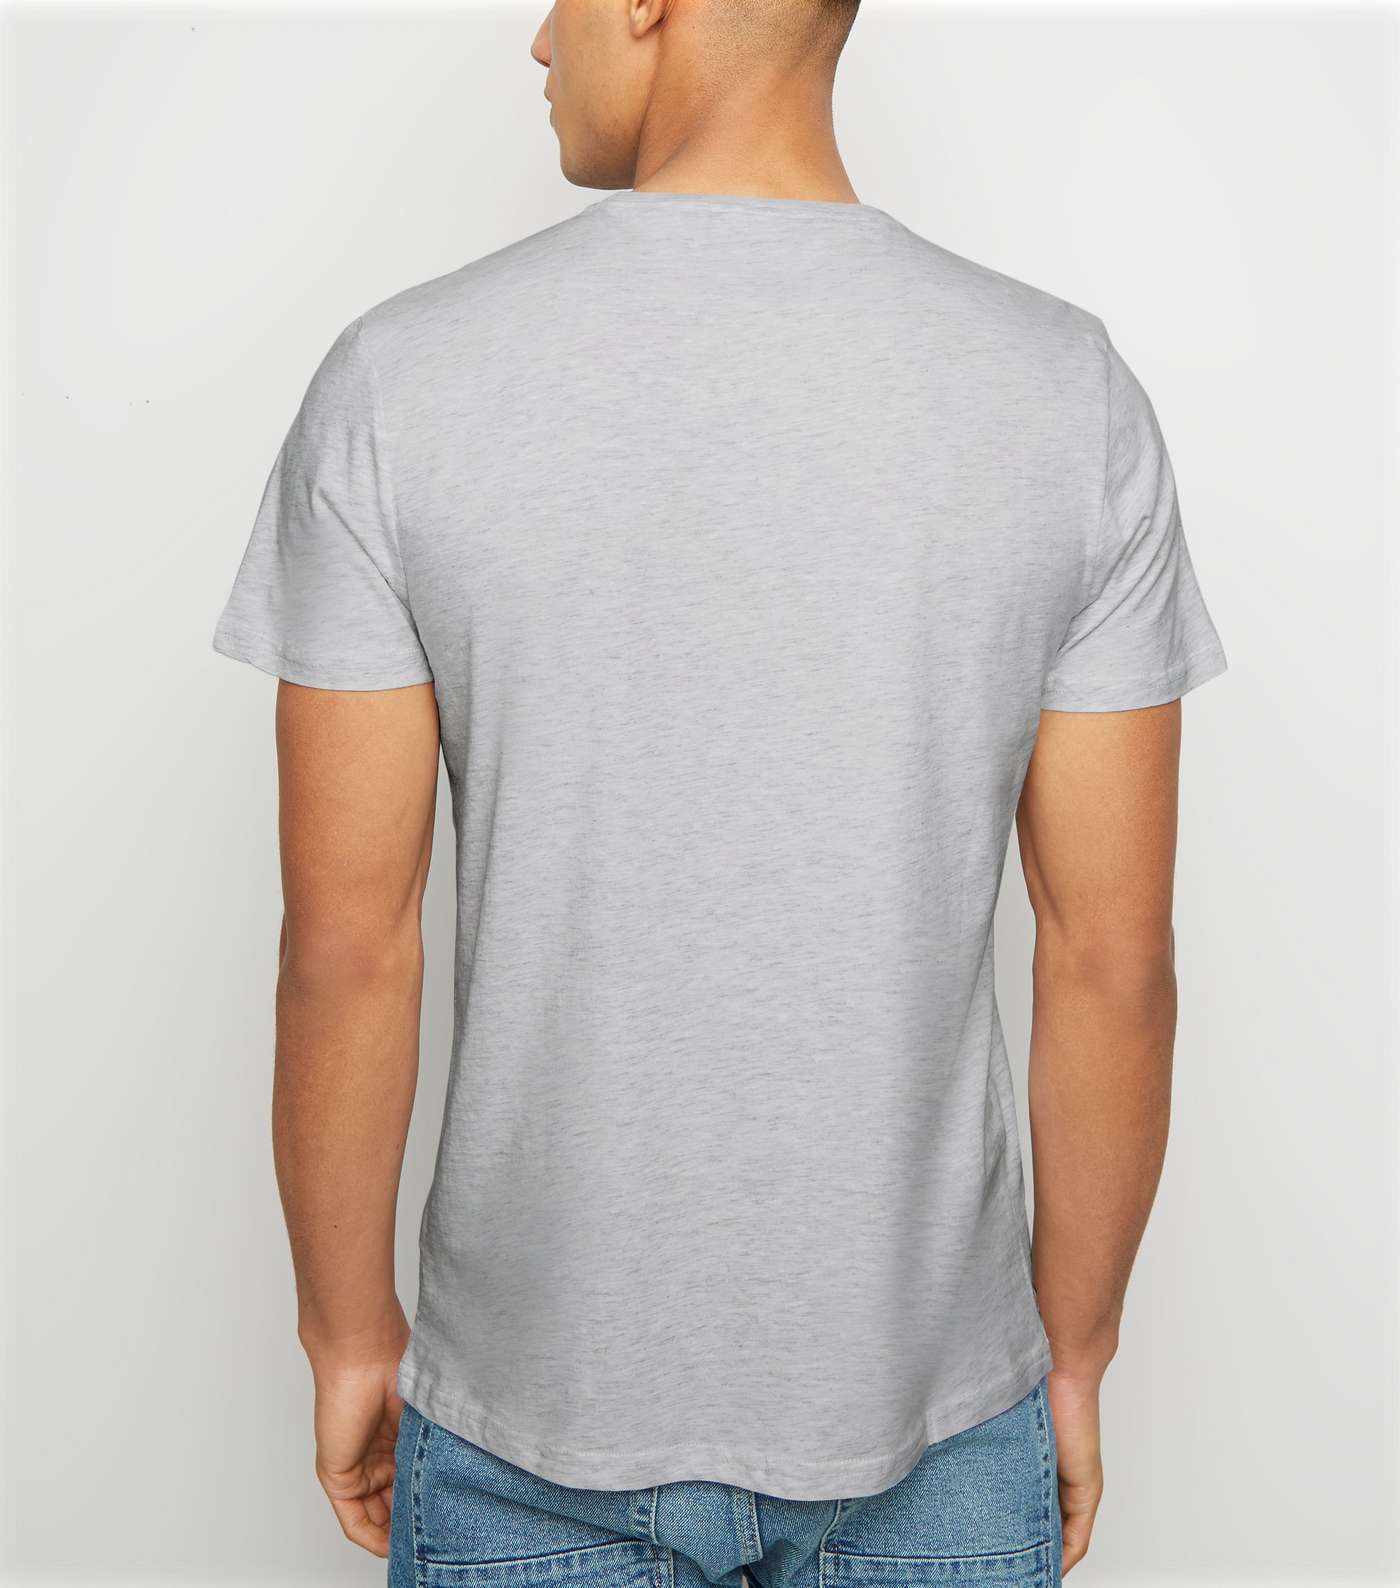 Pale Grey Crew Neck Cotton T-Shirt Image 3